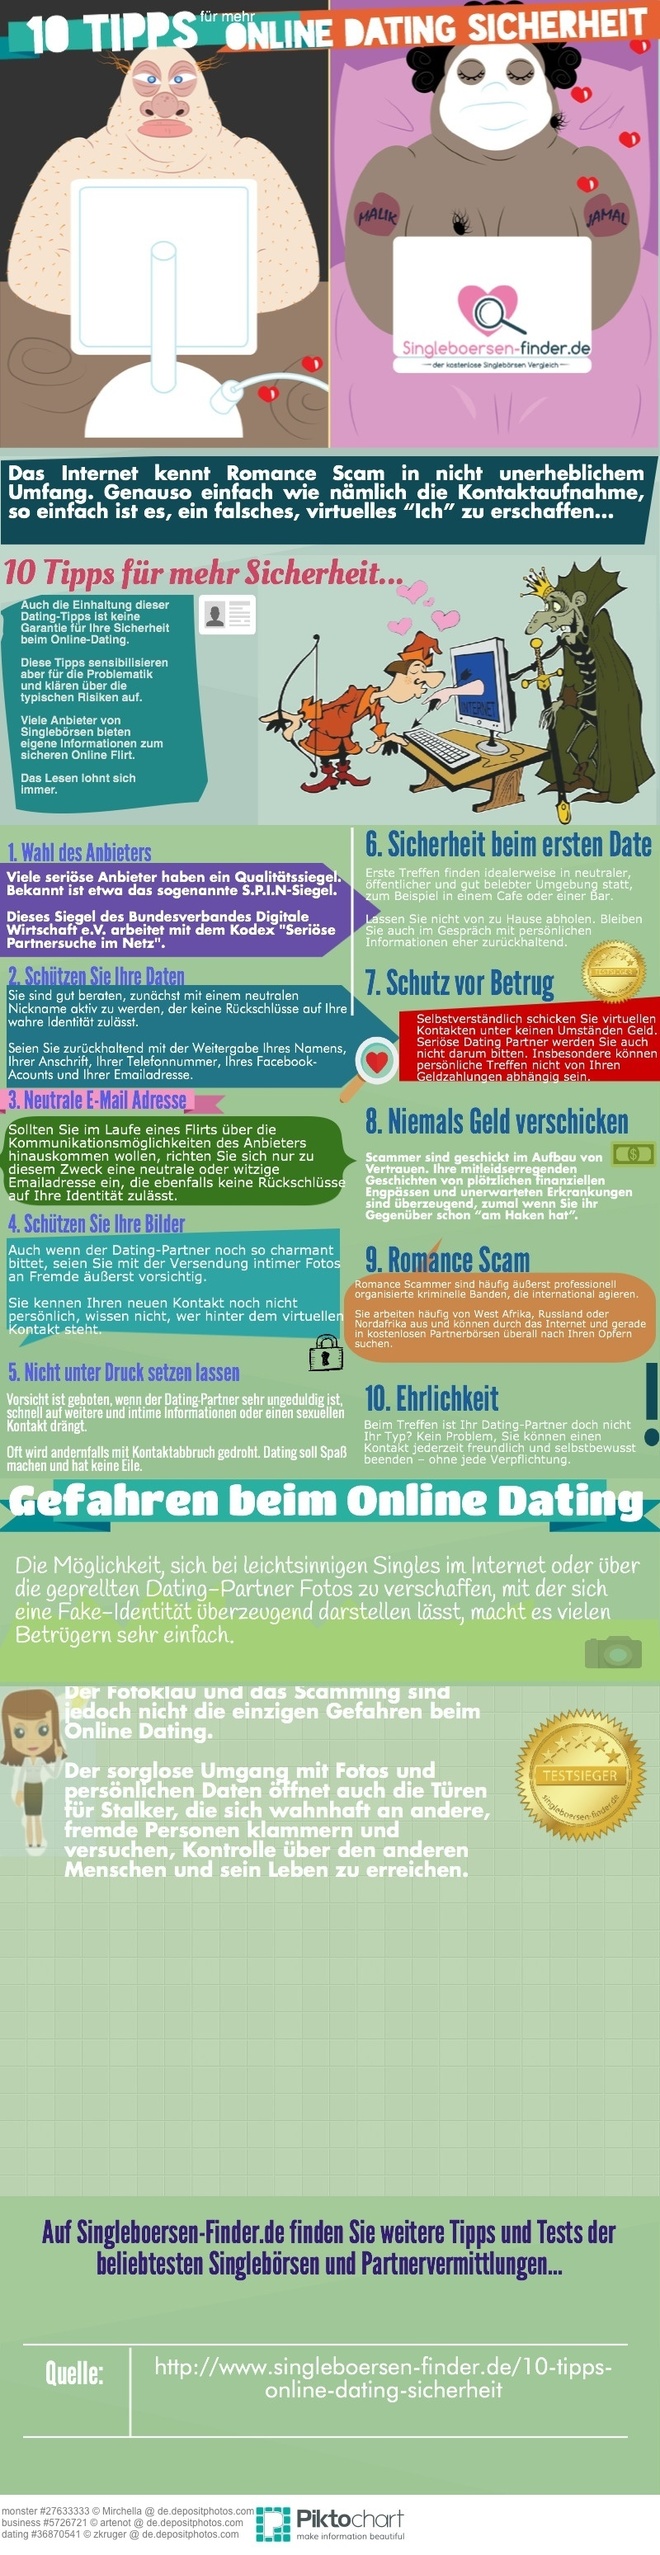 Tipps für sicheres Online Dating